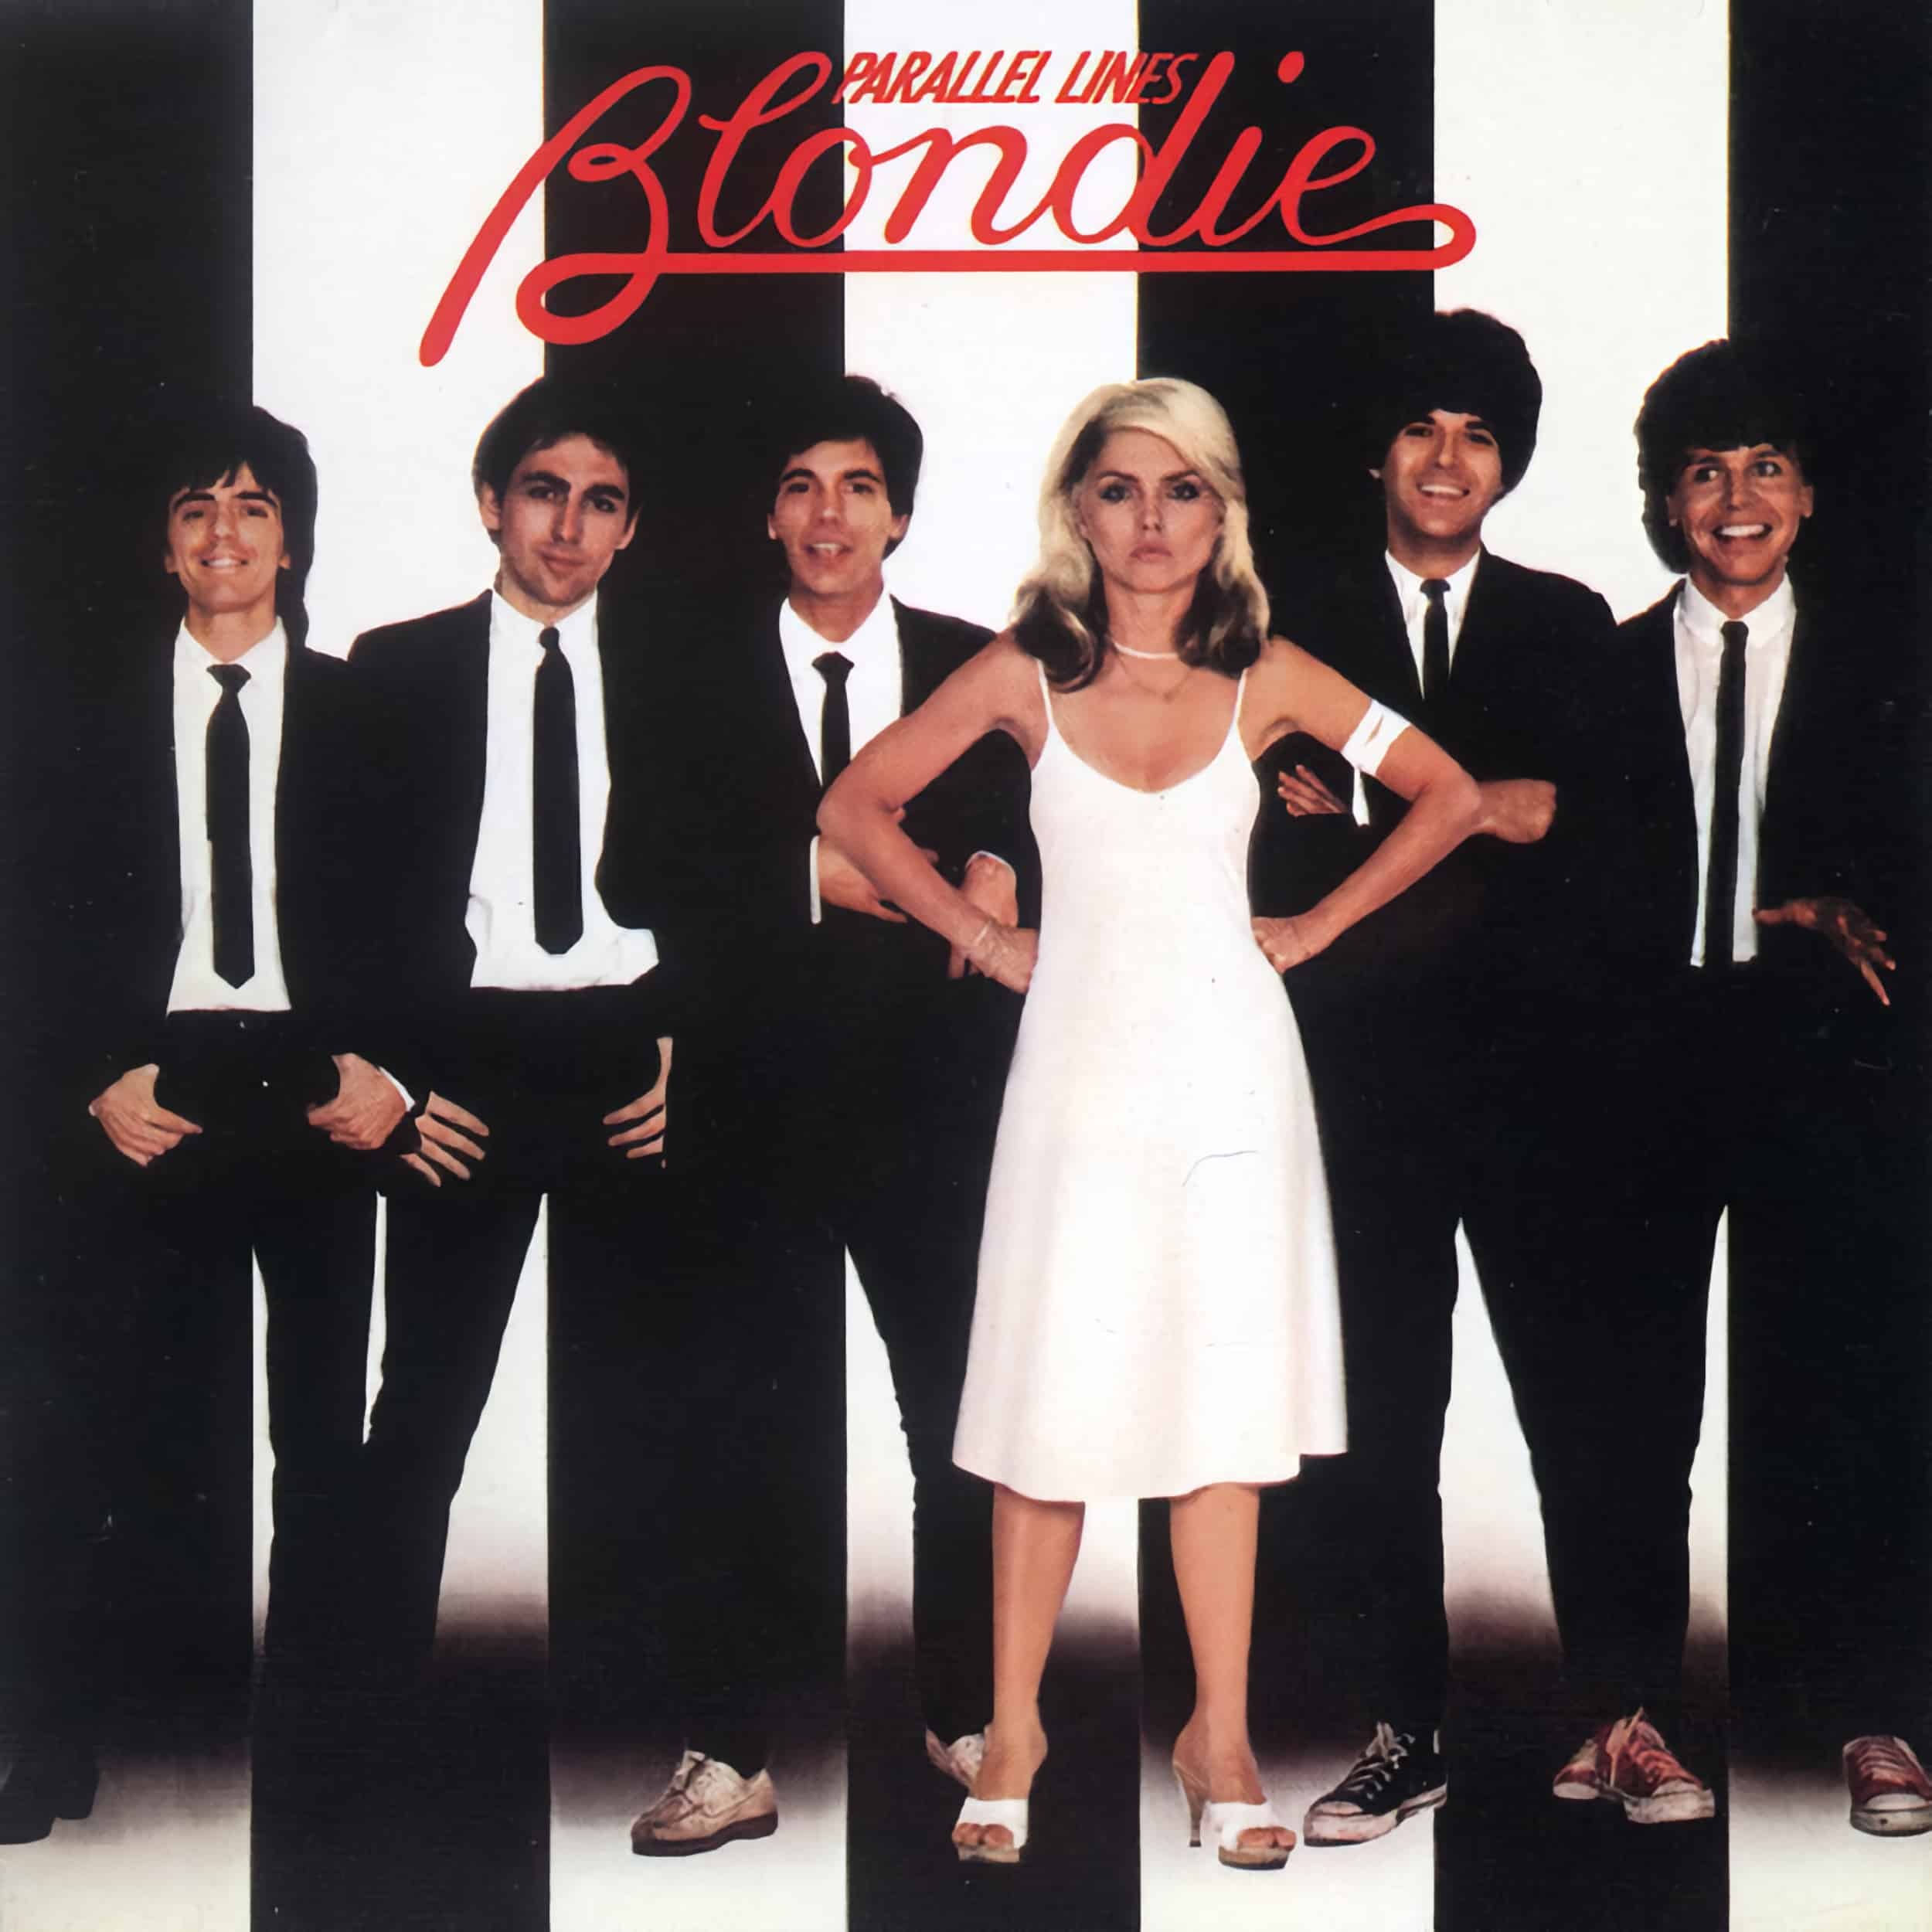 Blondie – Parallel Lines